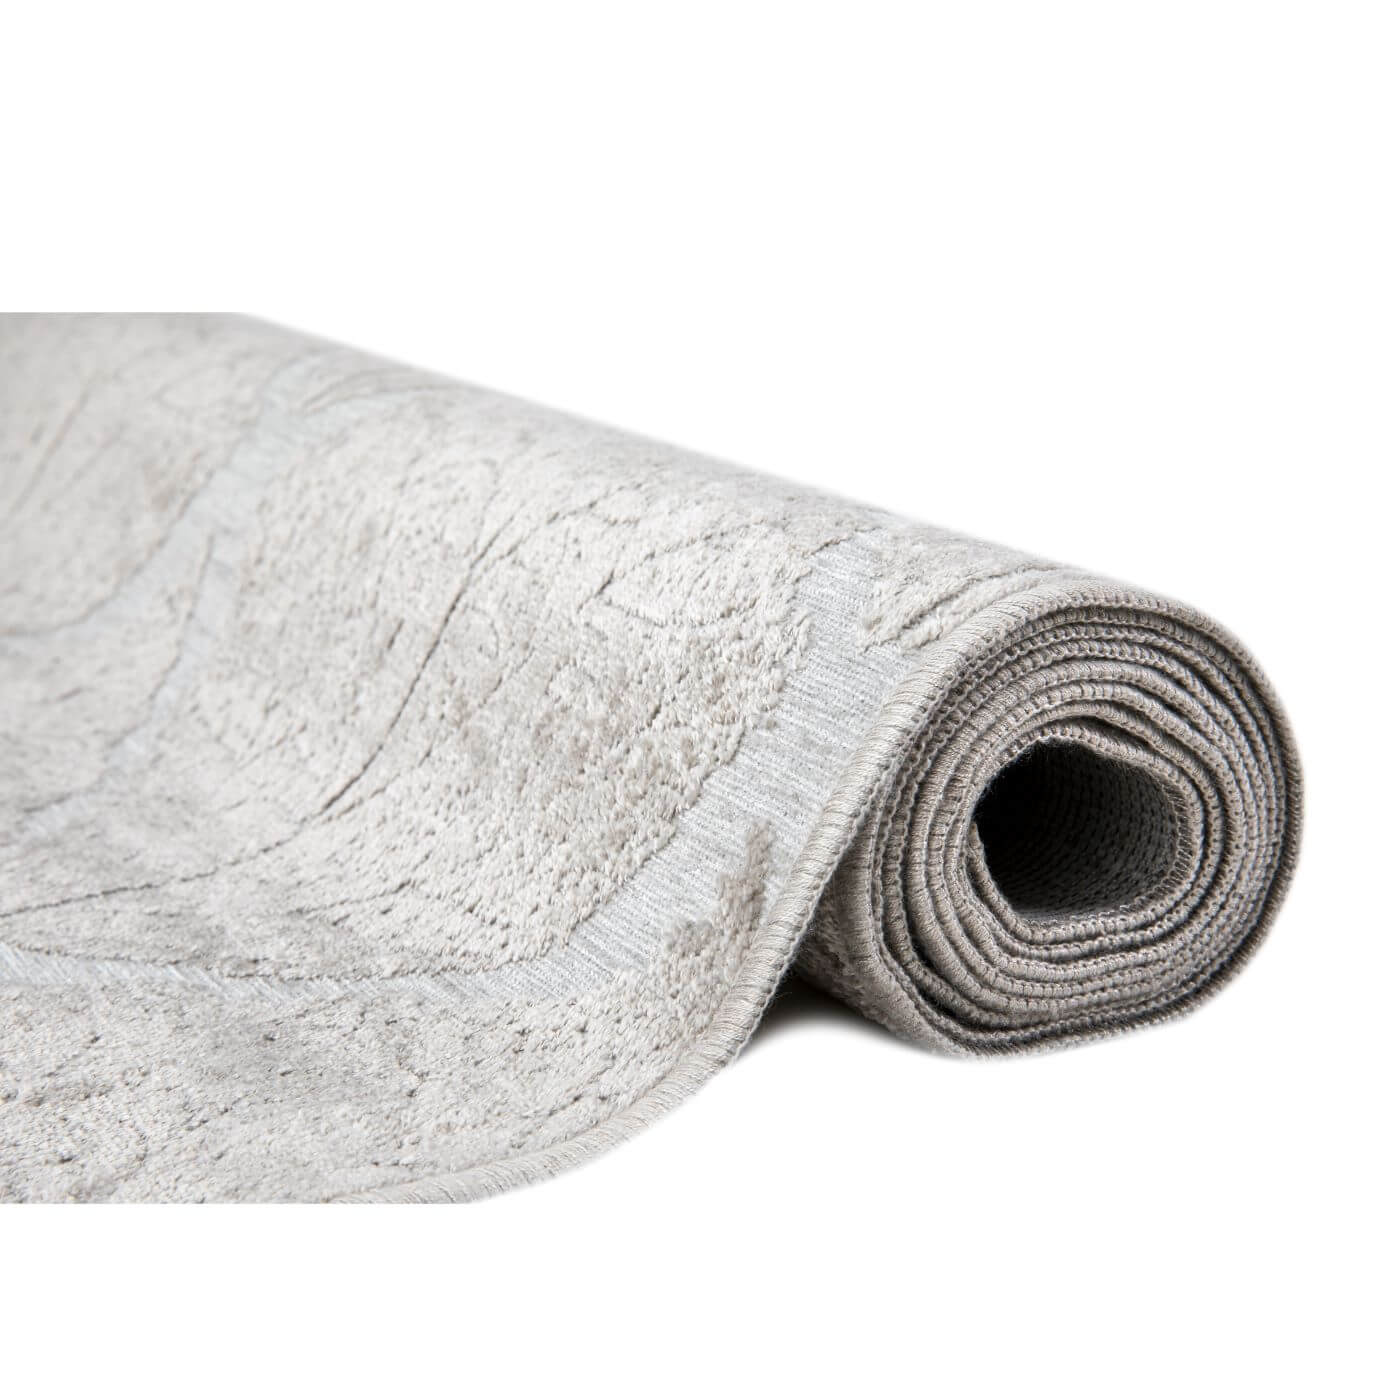 Częściowo zwinięty dywan liście BIRKE. Nowoczesny skandynawski dywan z połyskiem o krótkim włosiu, antyalergiczny